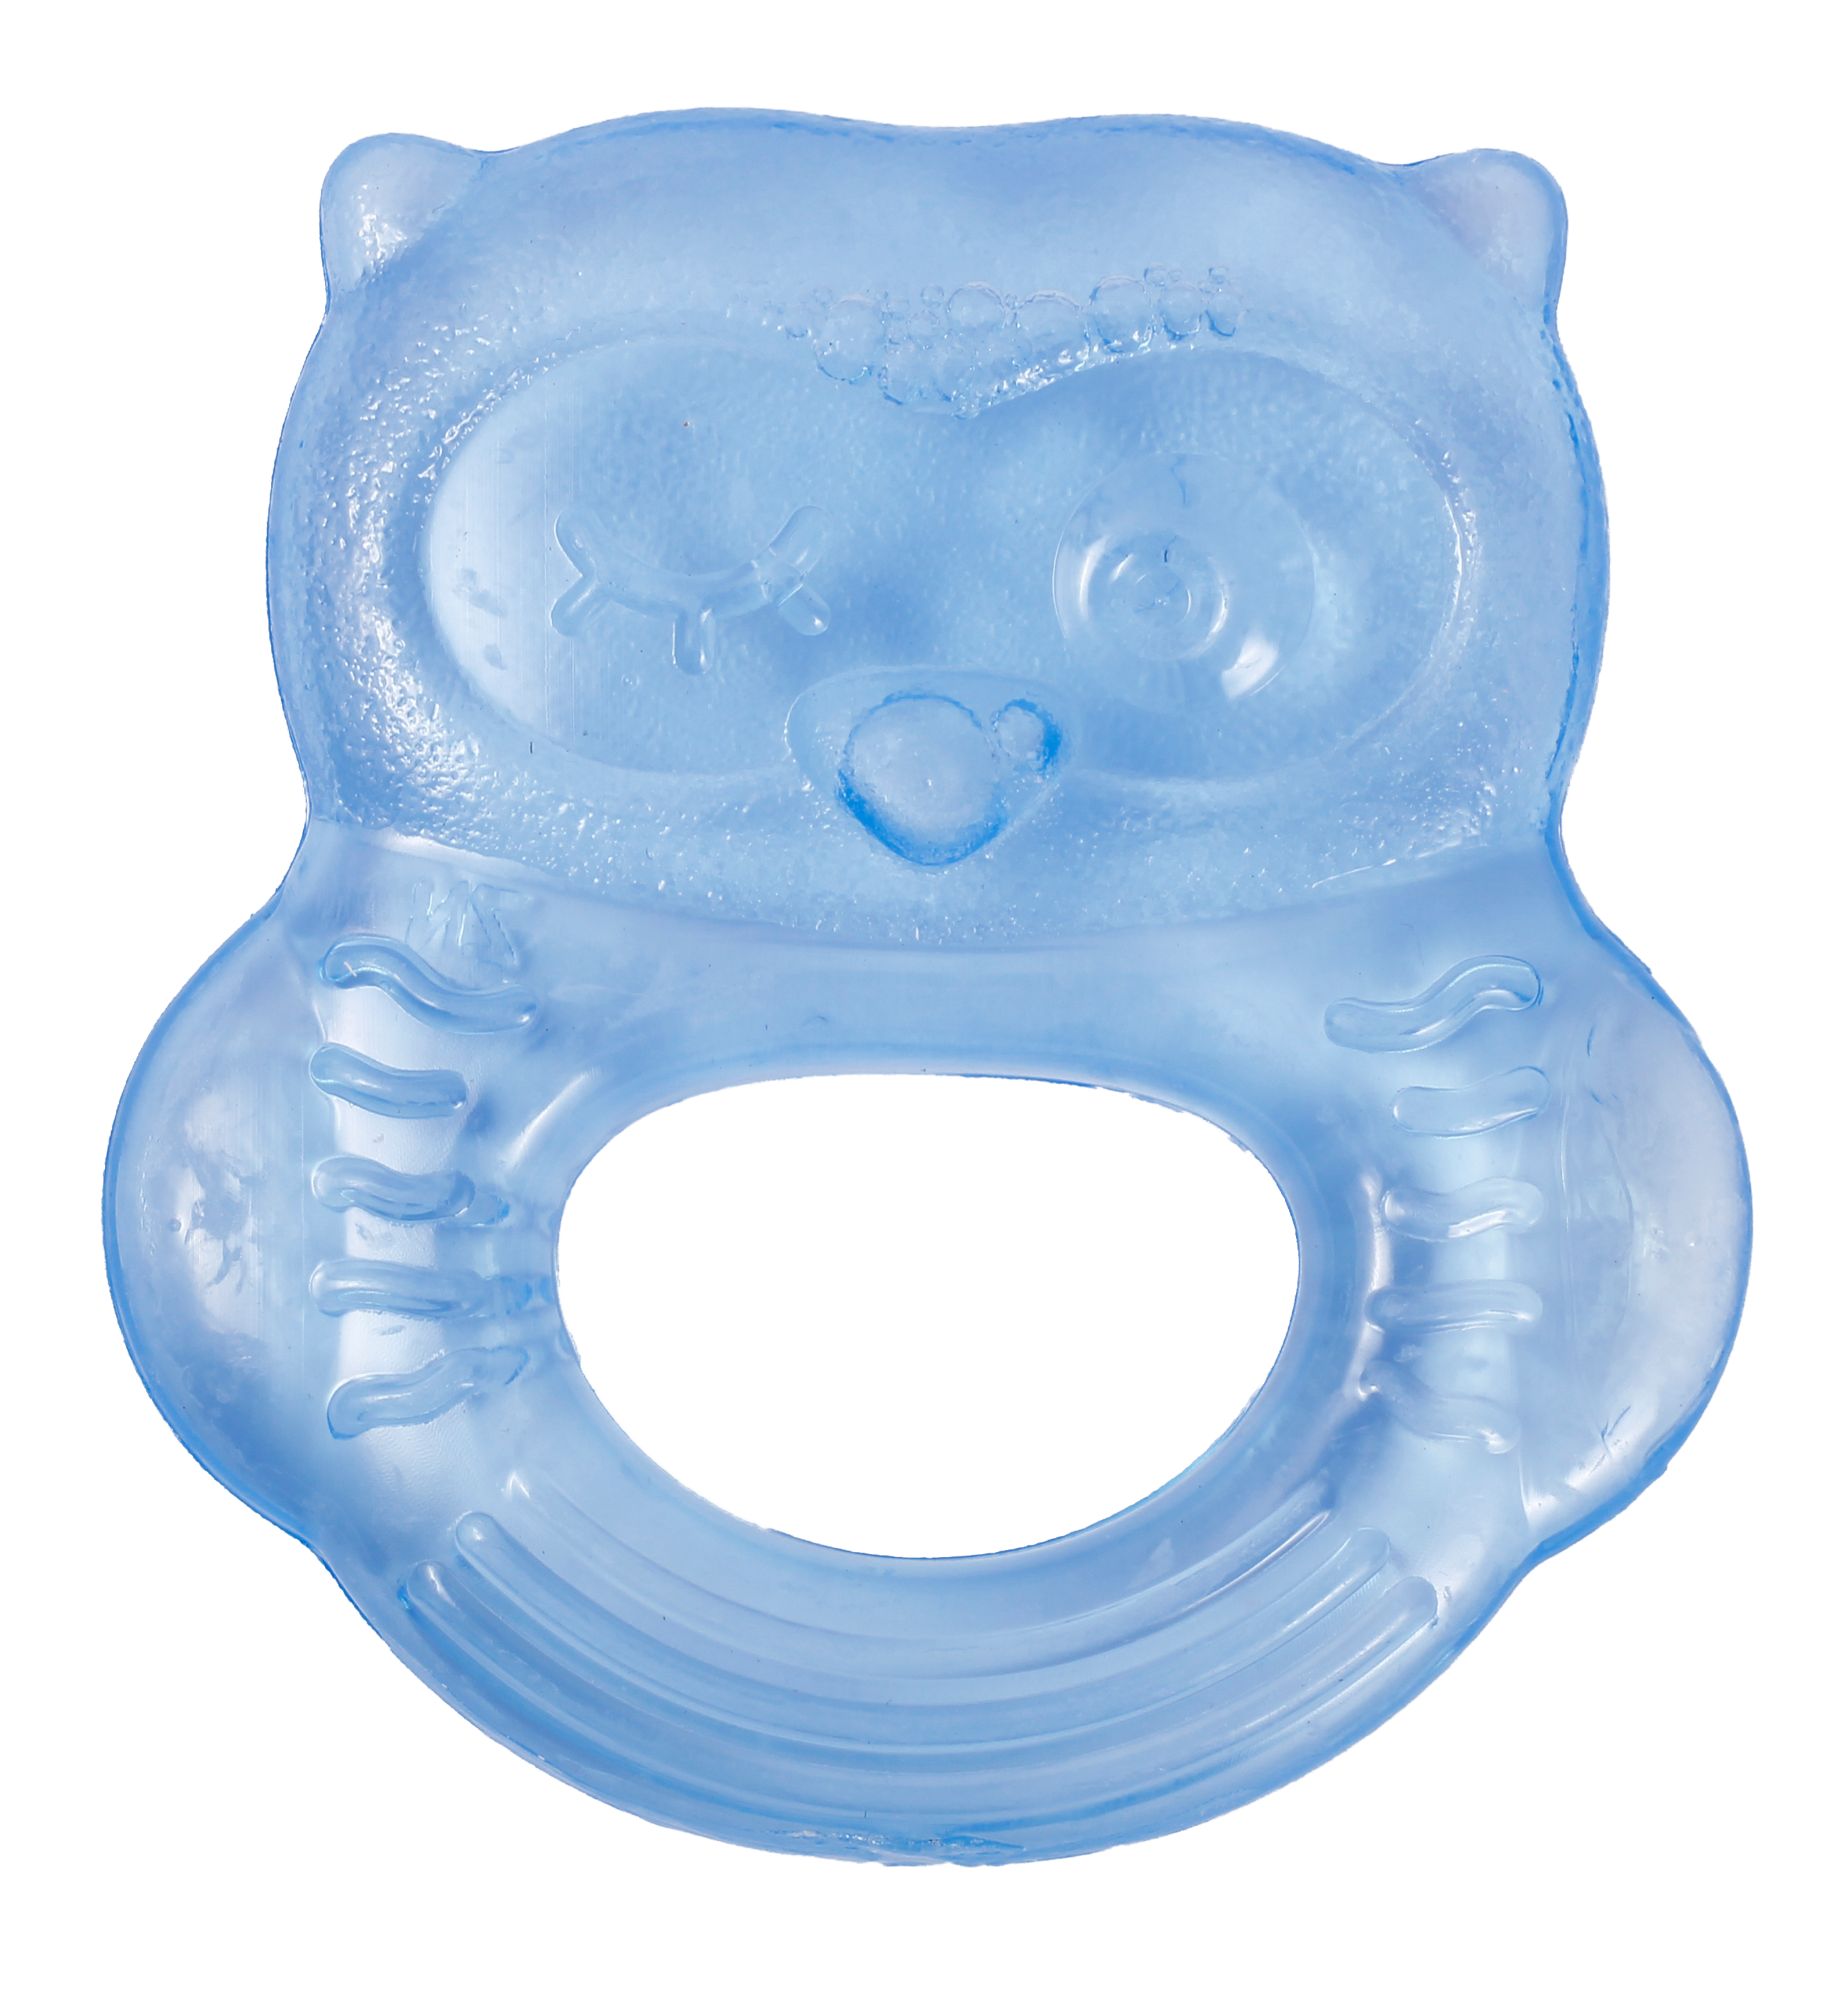 Прорезыватель для зубов Lindo Сова, с водой, синий (Li 318 син) - фото 1